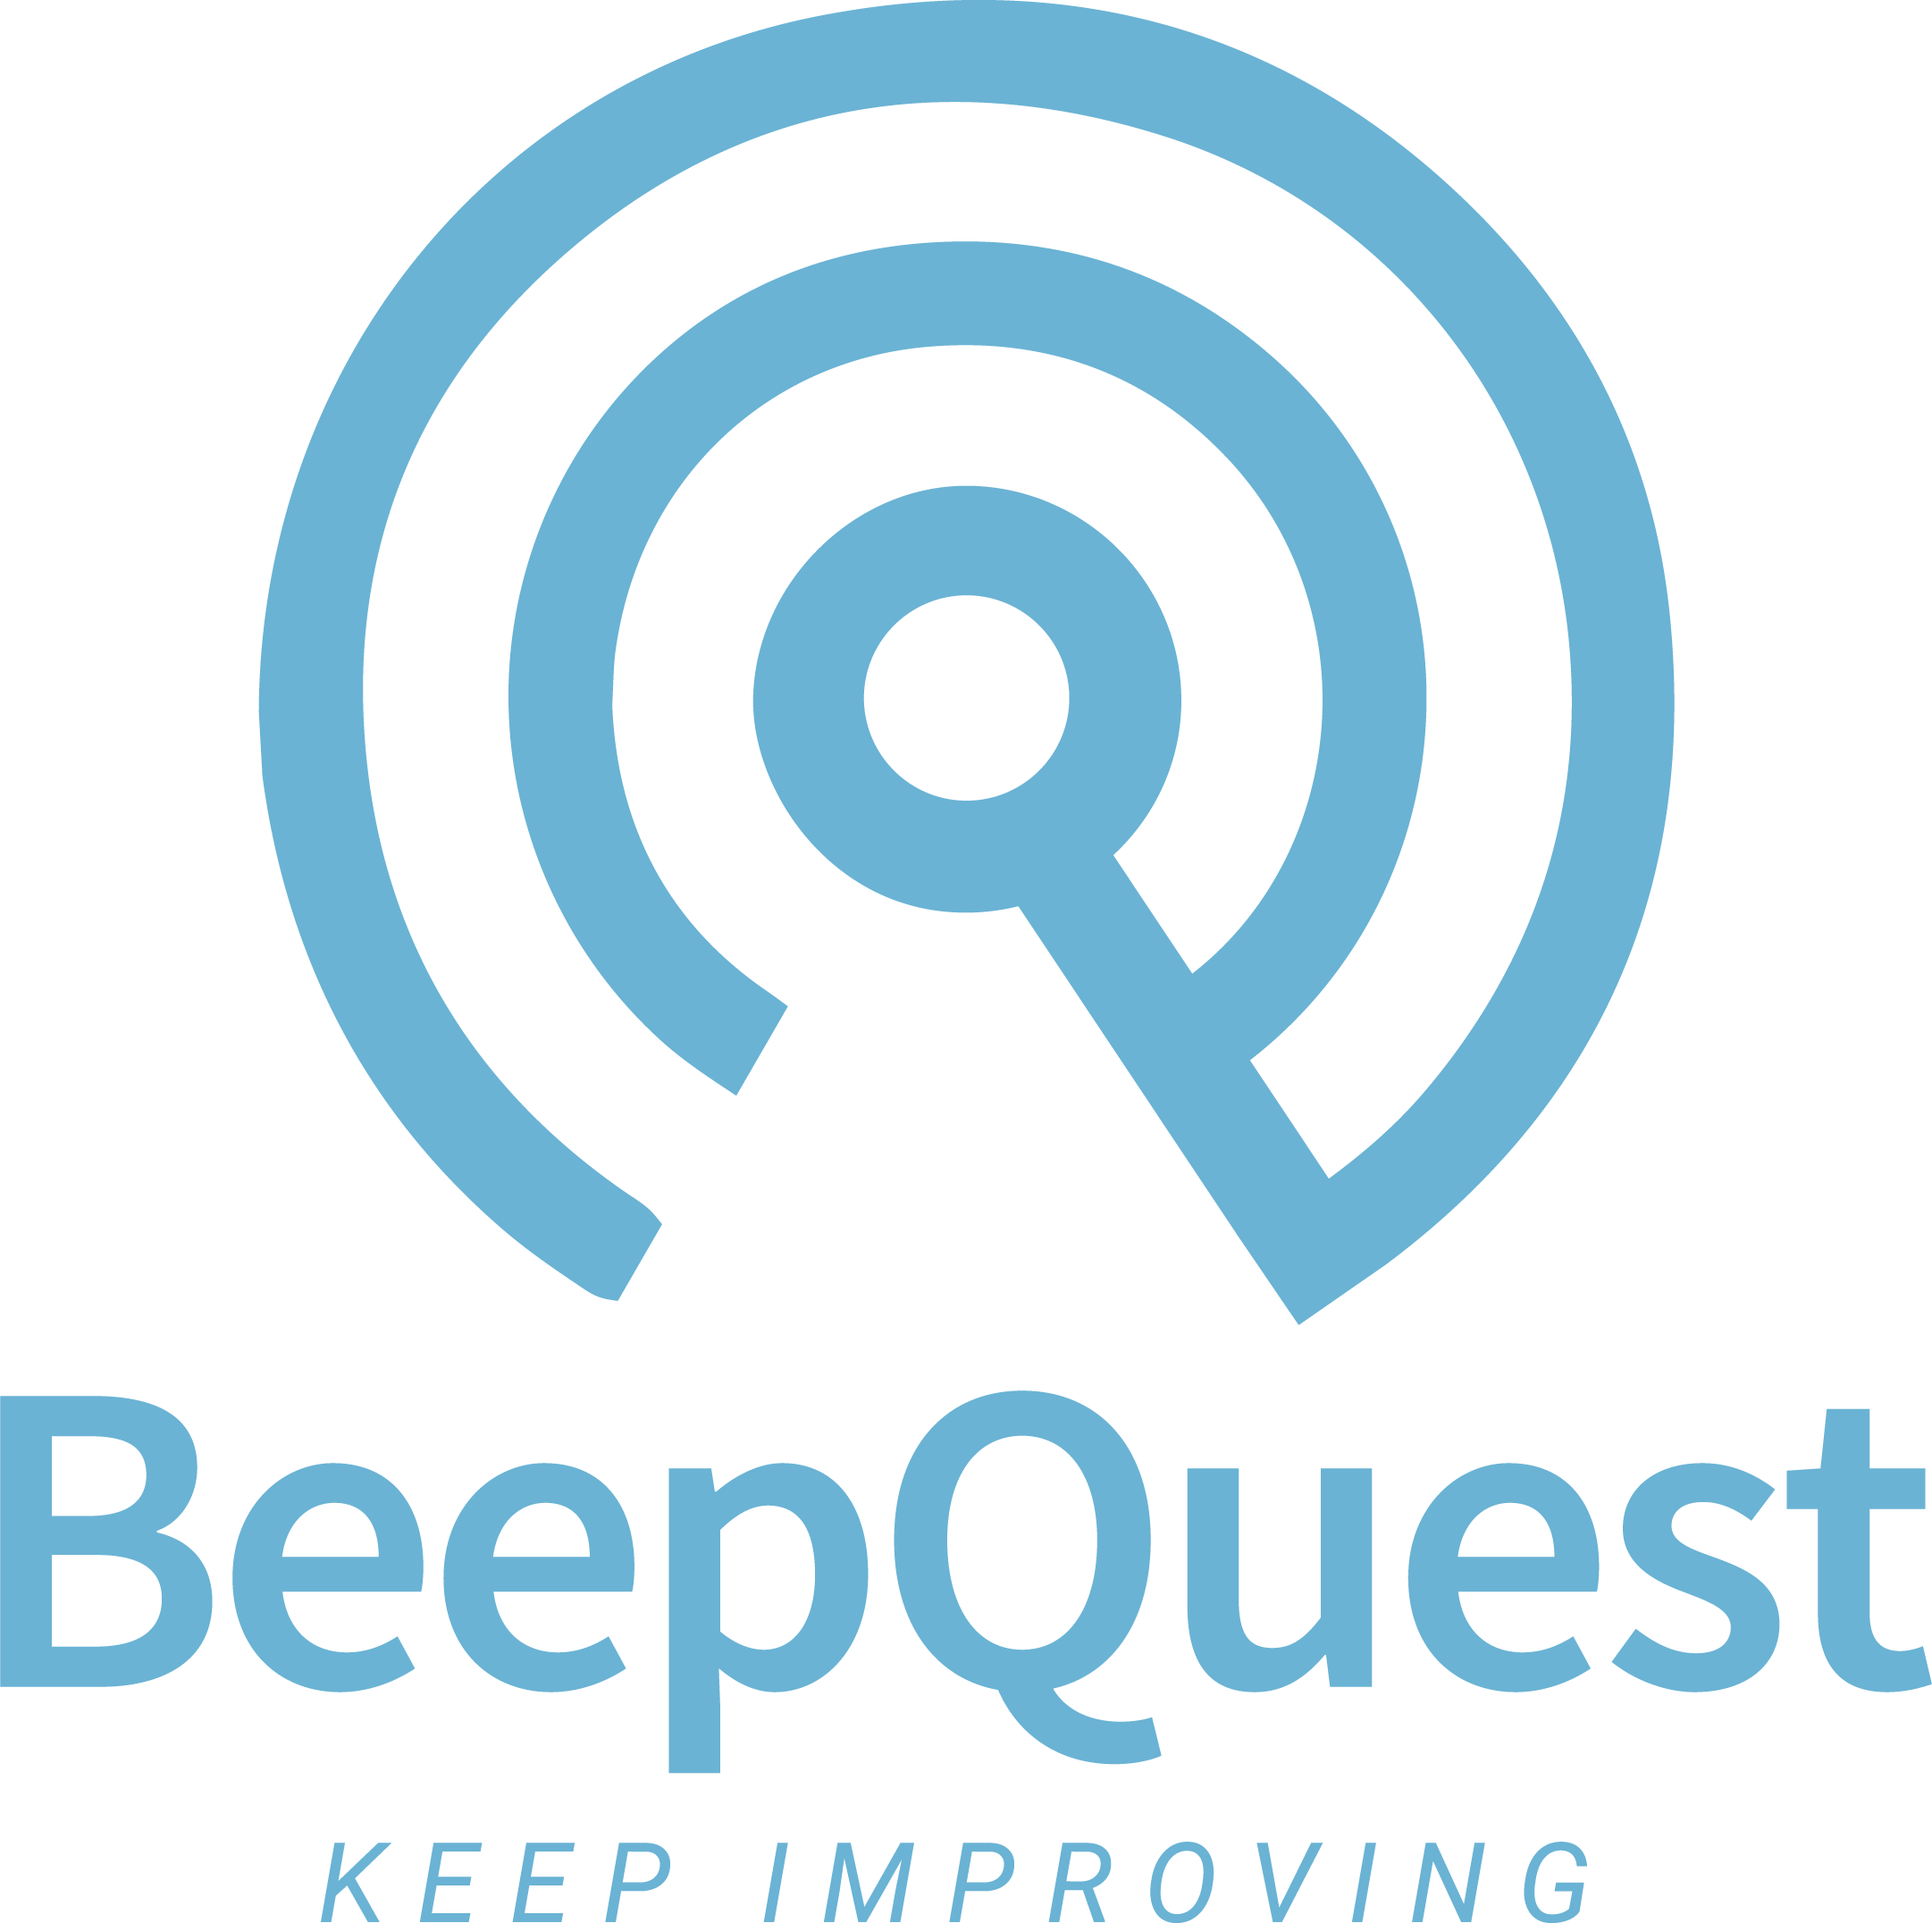 BeepQuest